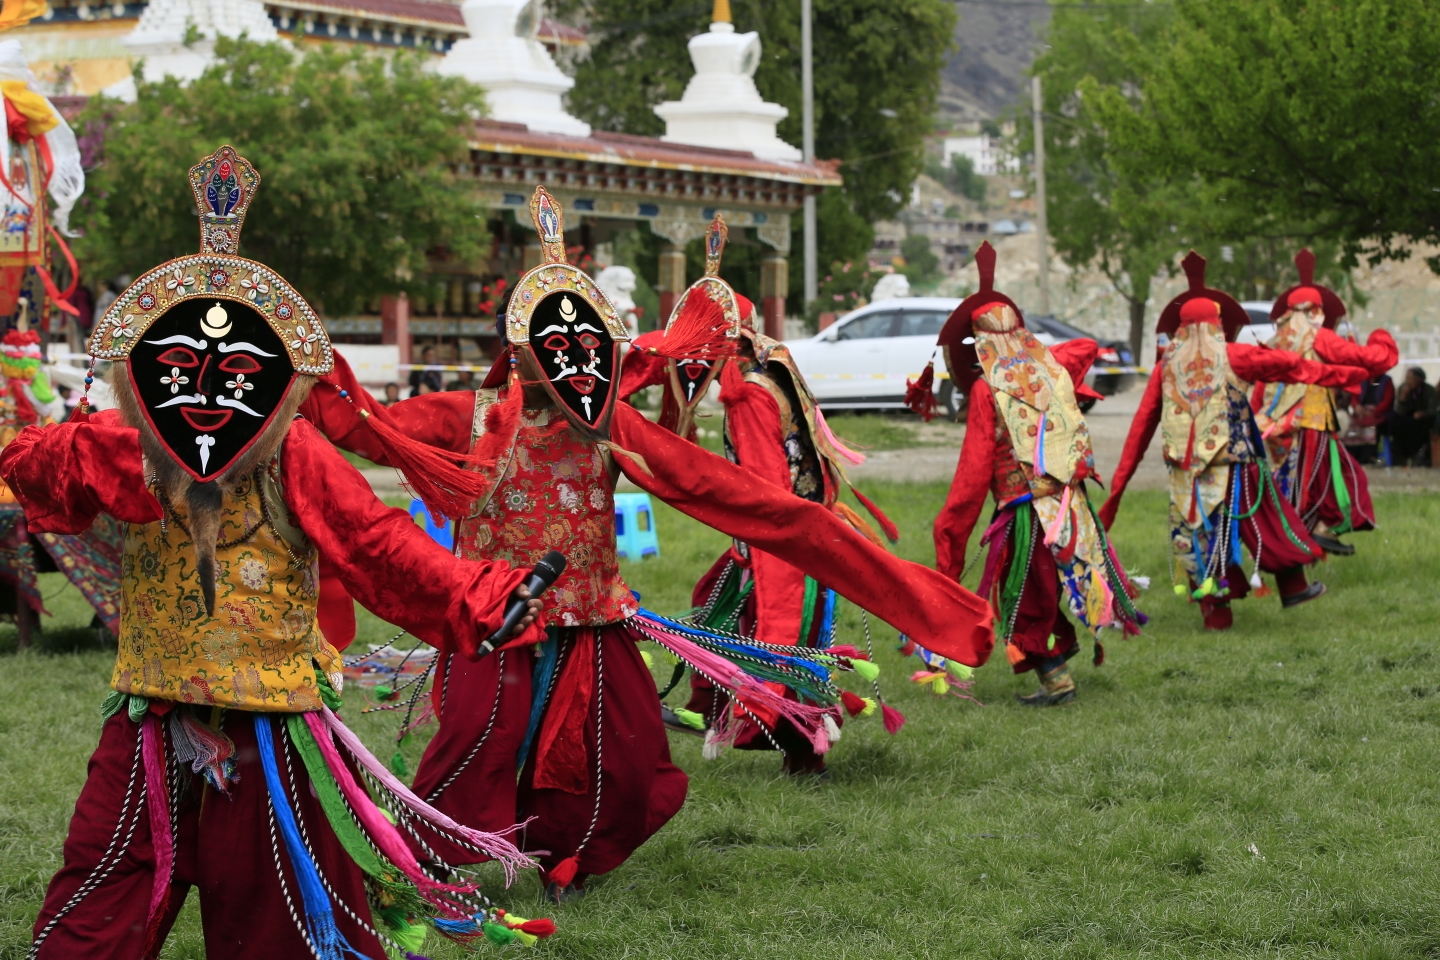 青海玉树藏族民间舞蹈的传承和发展及肢体语言特色 - Powered by Discuz!